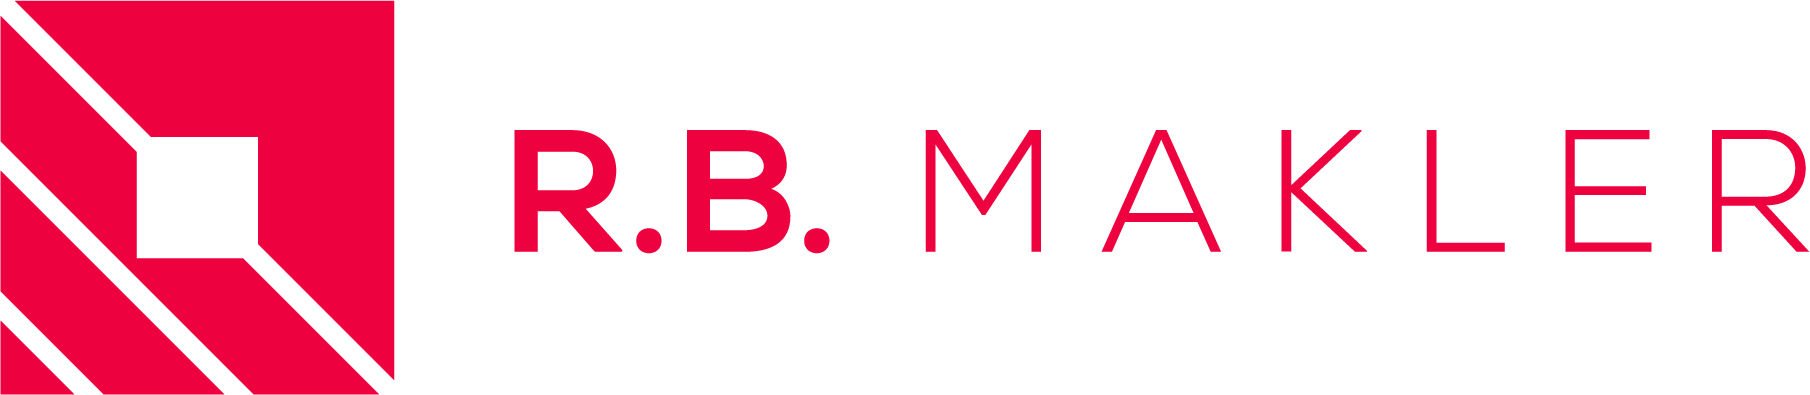 R. B. MAKLER GmbH